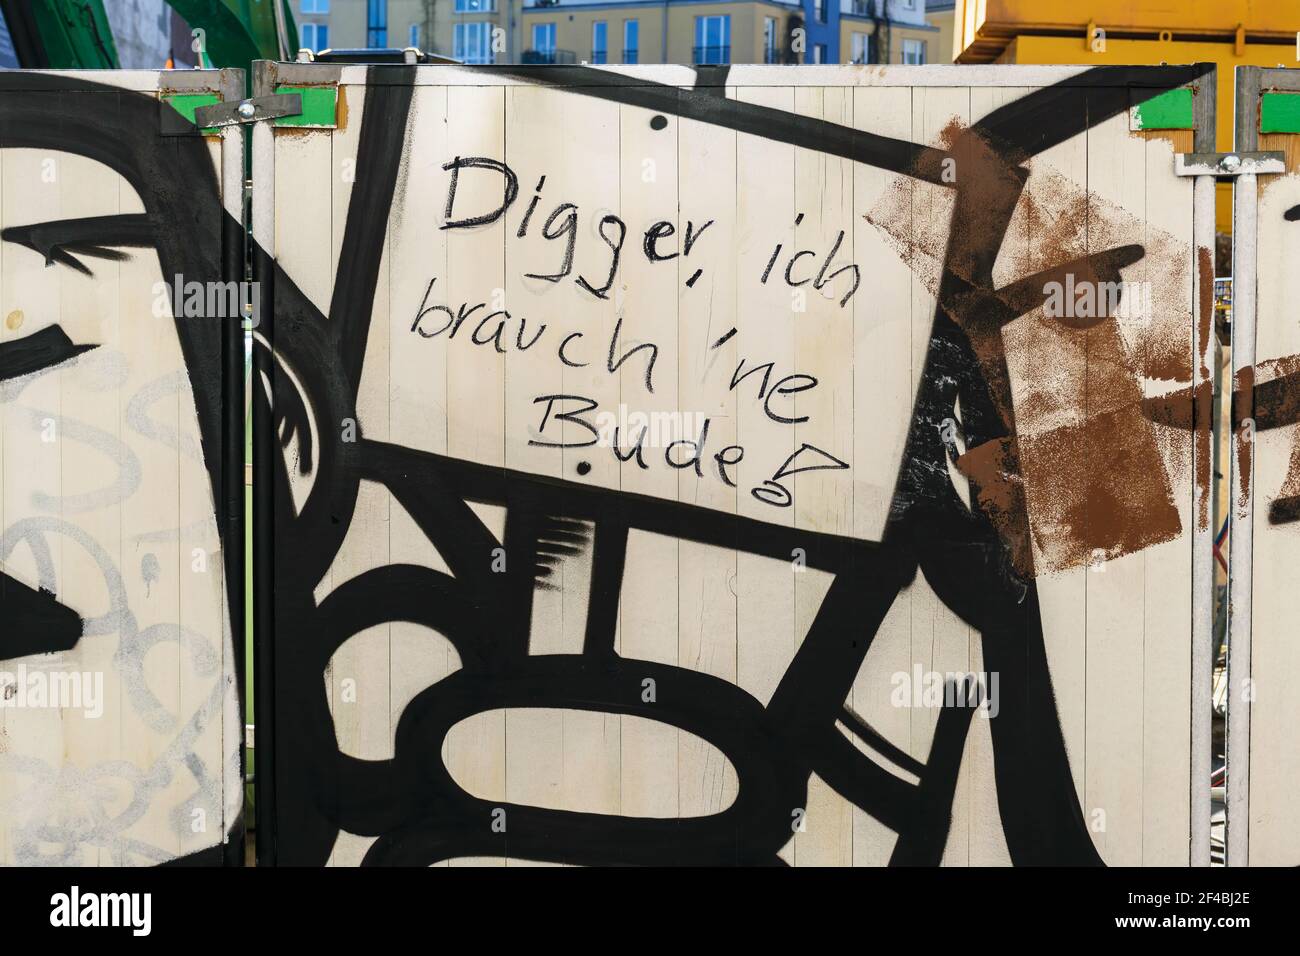 Wohnungsmangel in großen Städten. Hier mit dem deutschen Text 'Digger, ich brauch 'ne Bude!. Buddy, ich brauche eine Wohnung, Hamburg, Deutschland. Stockfoto